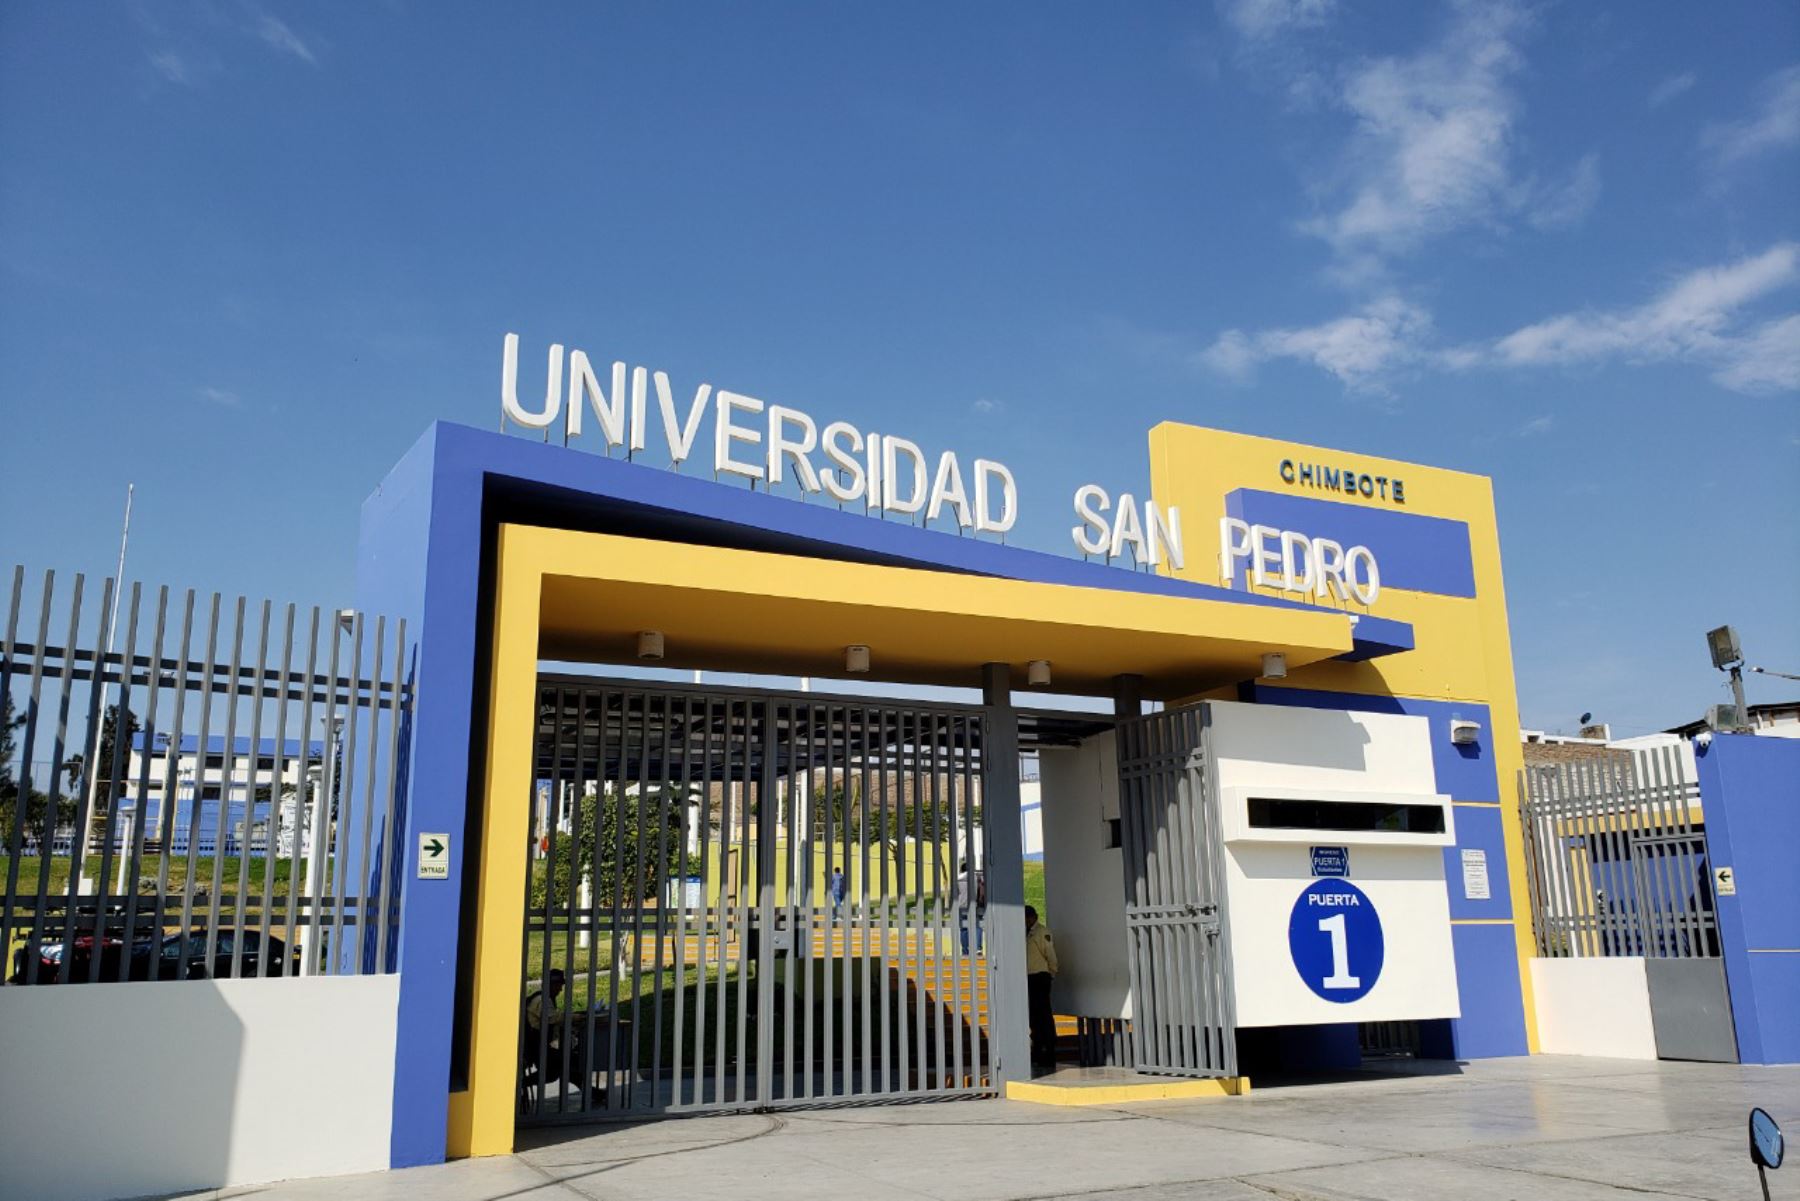 La Universidad San Pedro atiende a más de 19,000 estudiantes en su sede principal ubicada en la ciudad de Chimbote (Áncash) y cuatro filiales autorizadas.